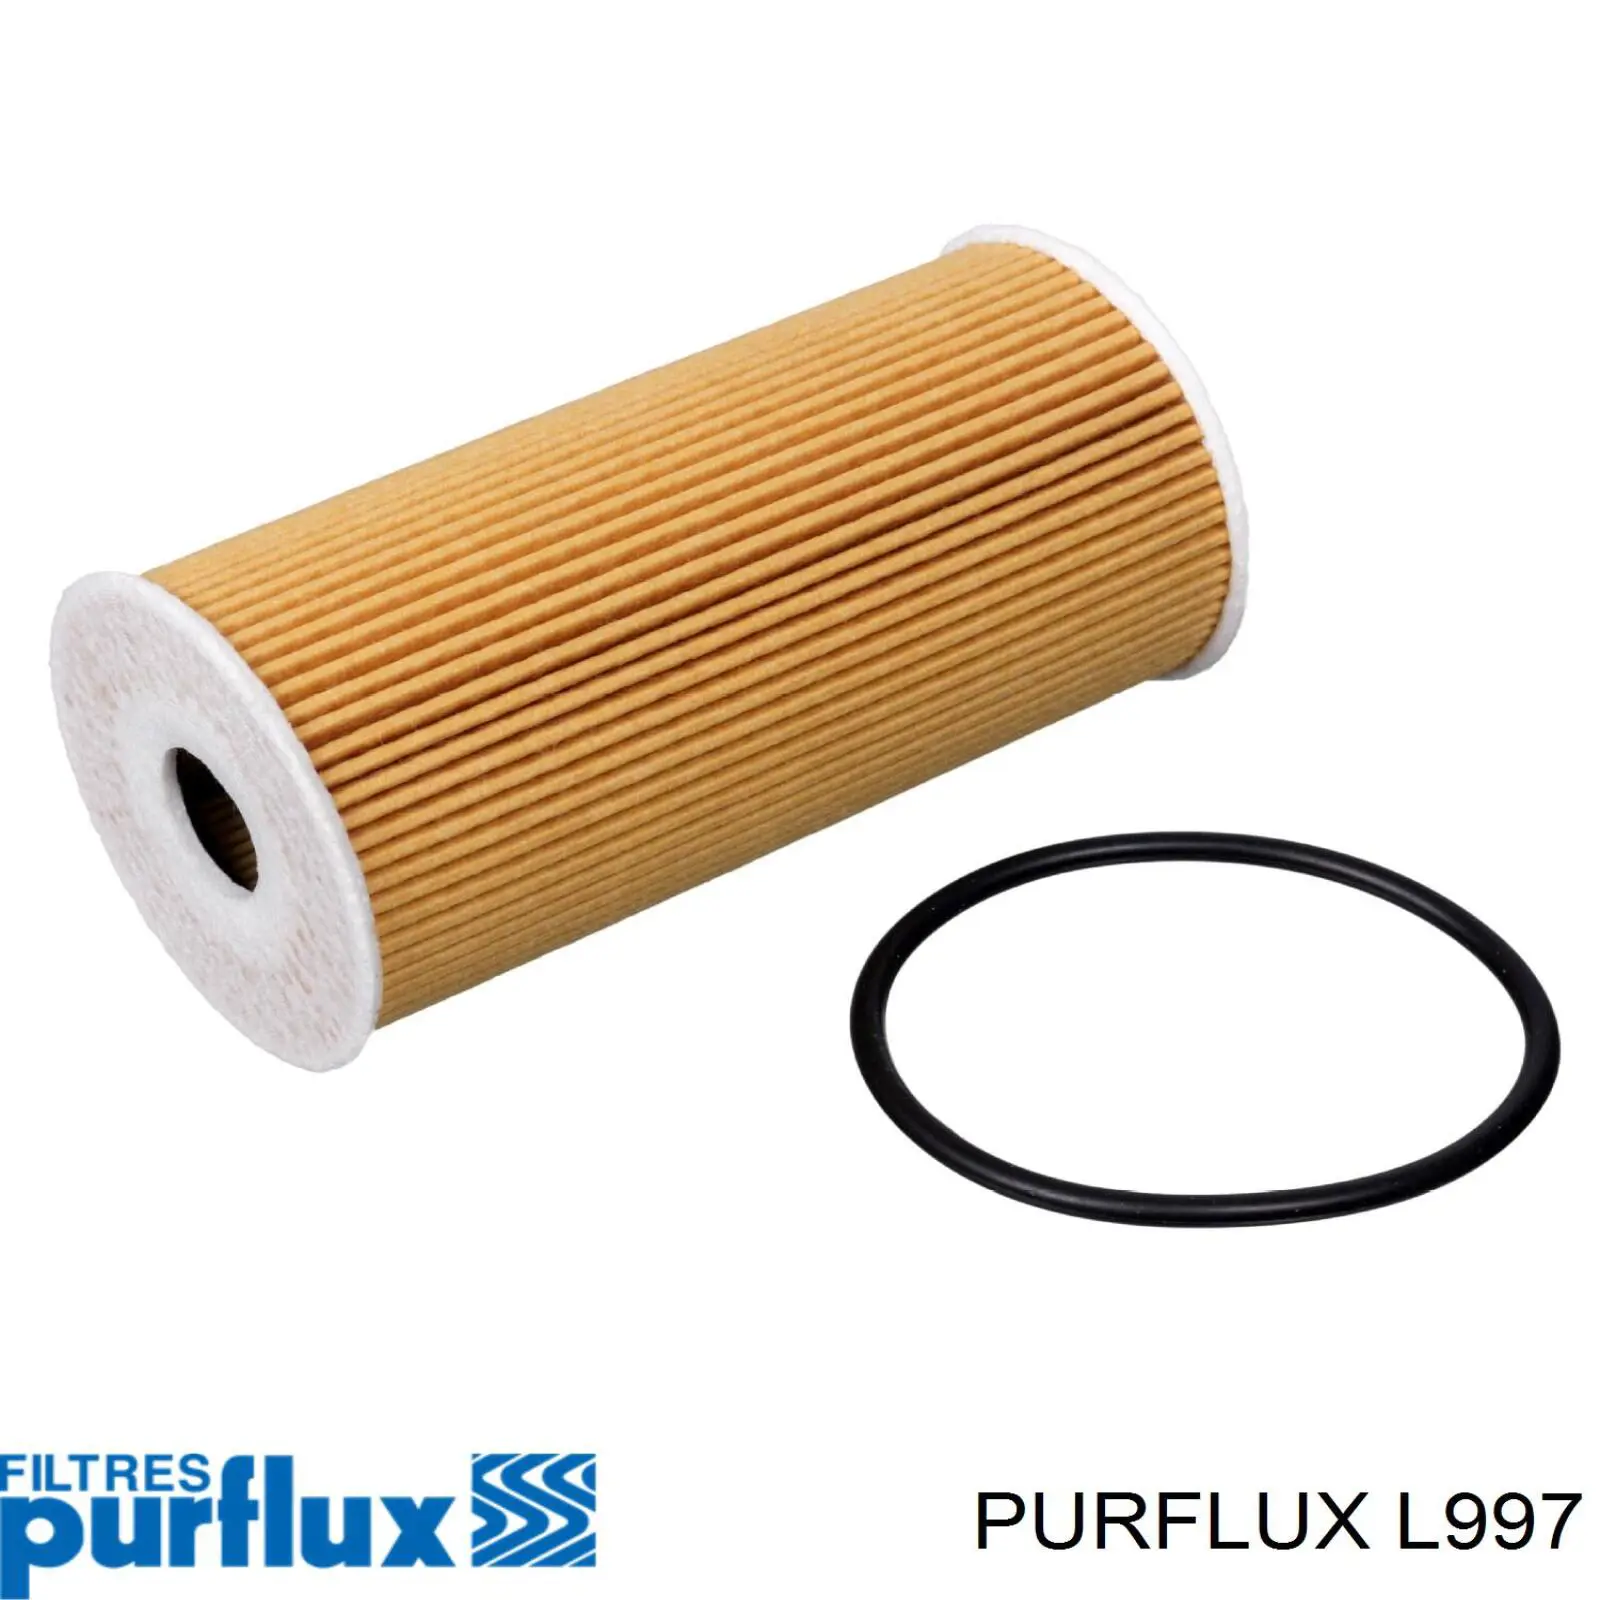 L997 Purflux filtro de aceite